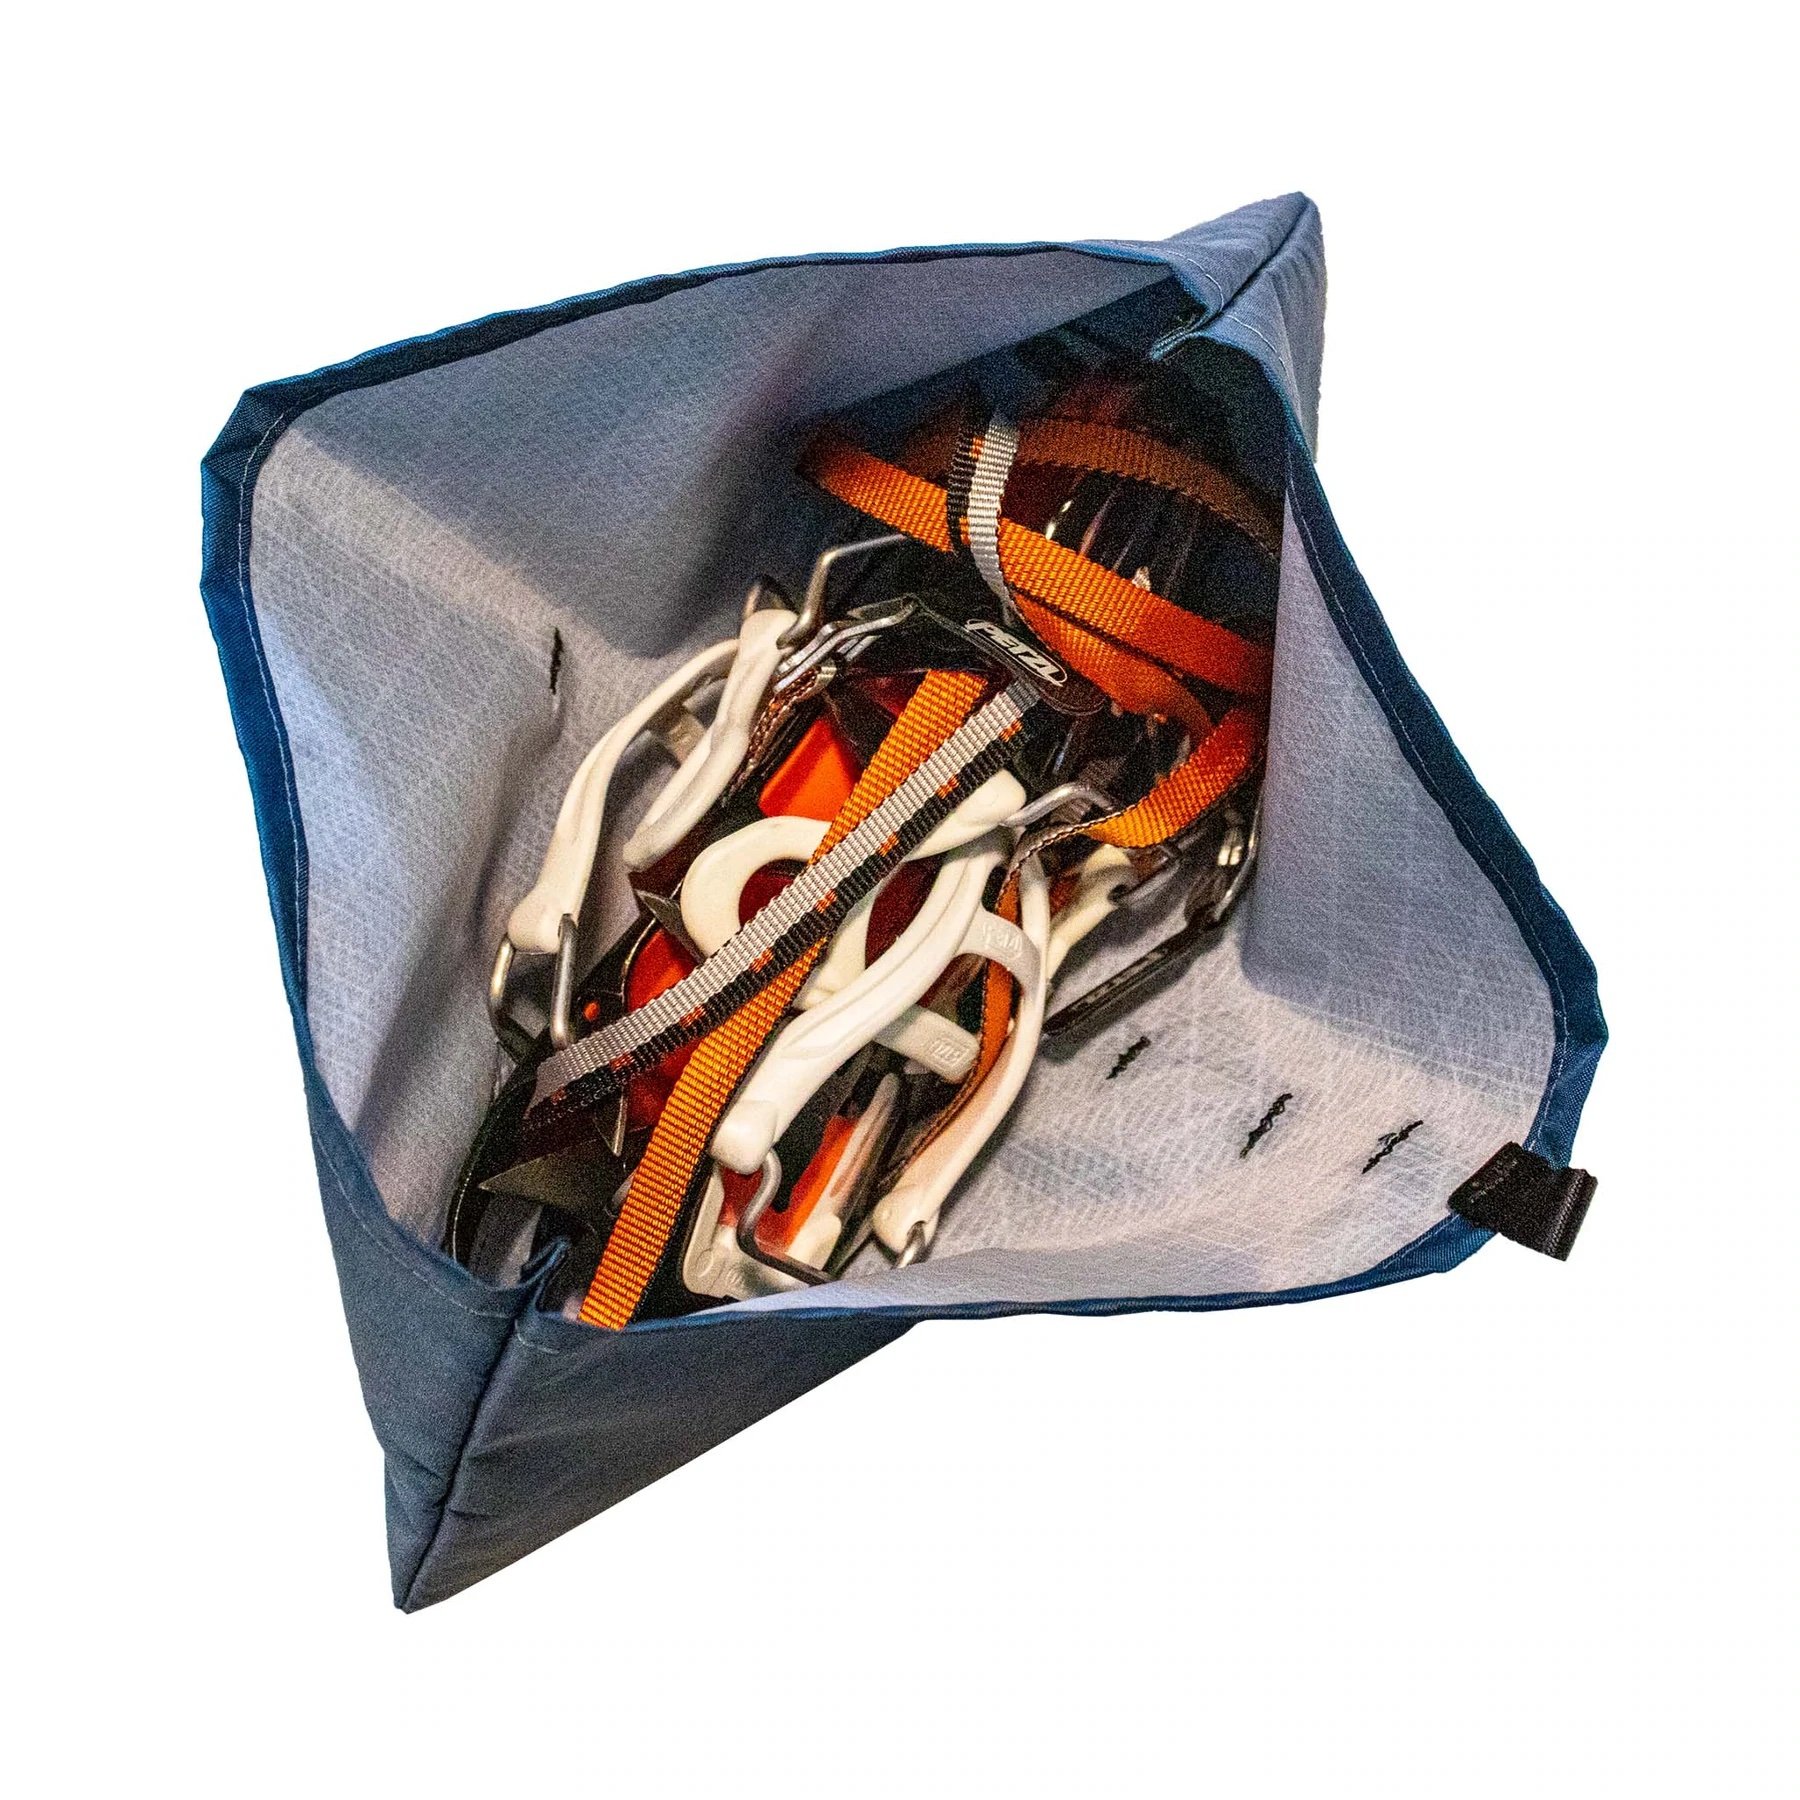 C.A.M.P. Foldable Crampon Bag - Sac à crampons, Achat en ligne